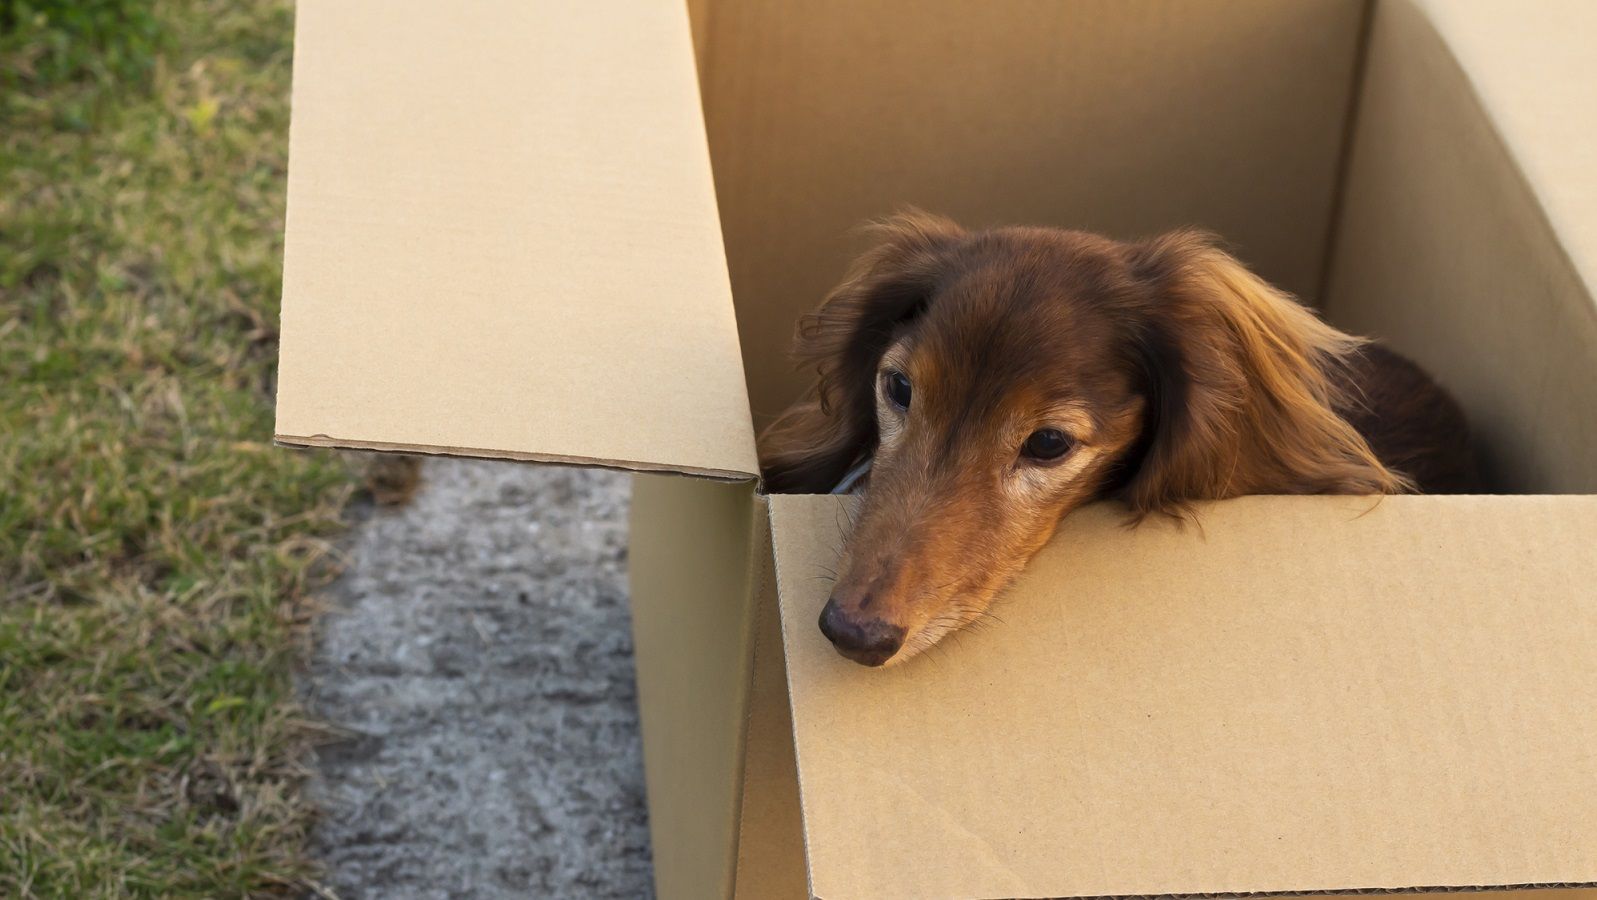 中国｢ペット福袋事件｣に見た深刻な動物虐待 宅配の荷物から約160匹の犬と猫が発見された | 中国･台湾 | 東洋経済オンライン